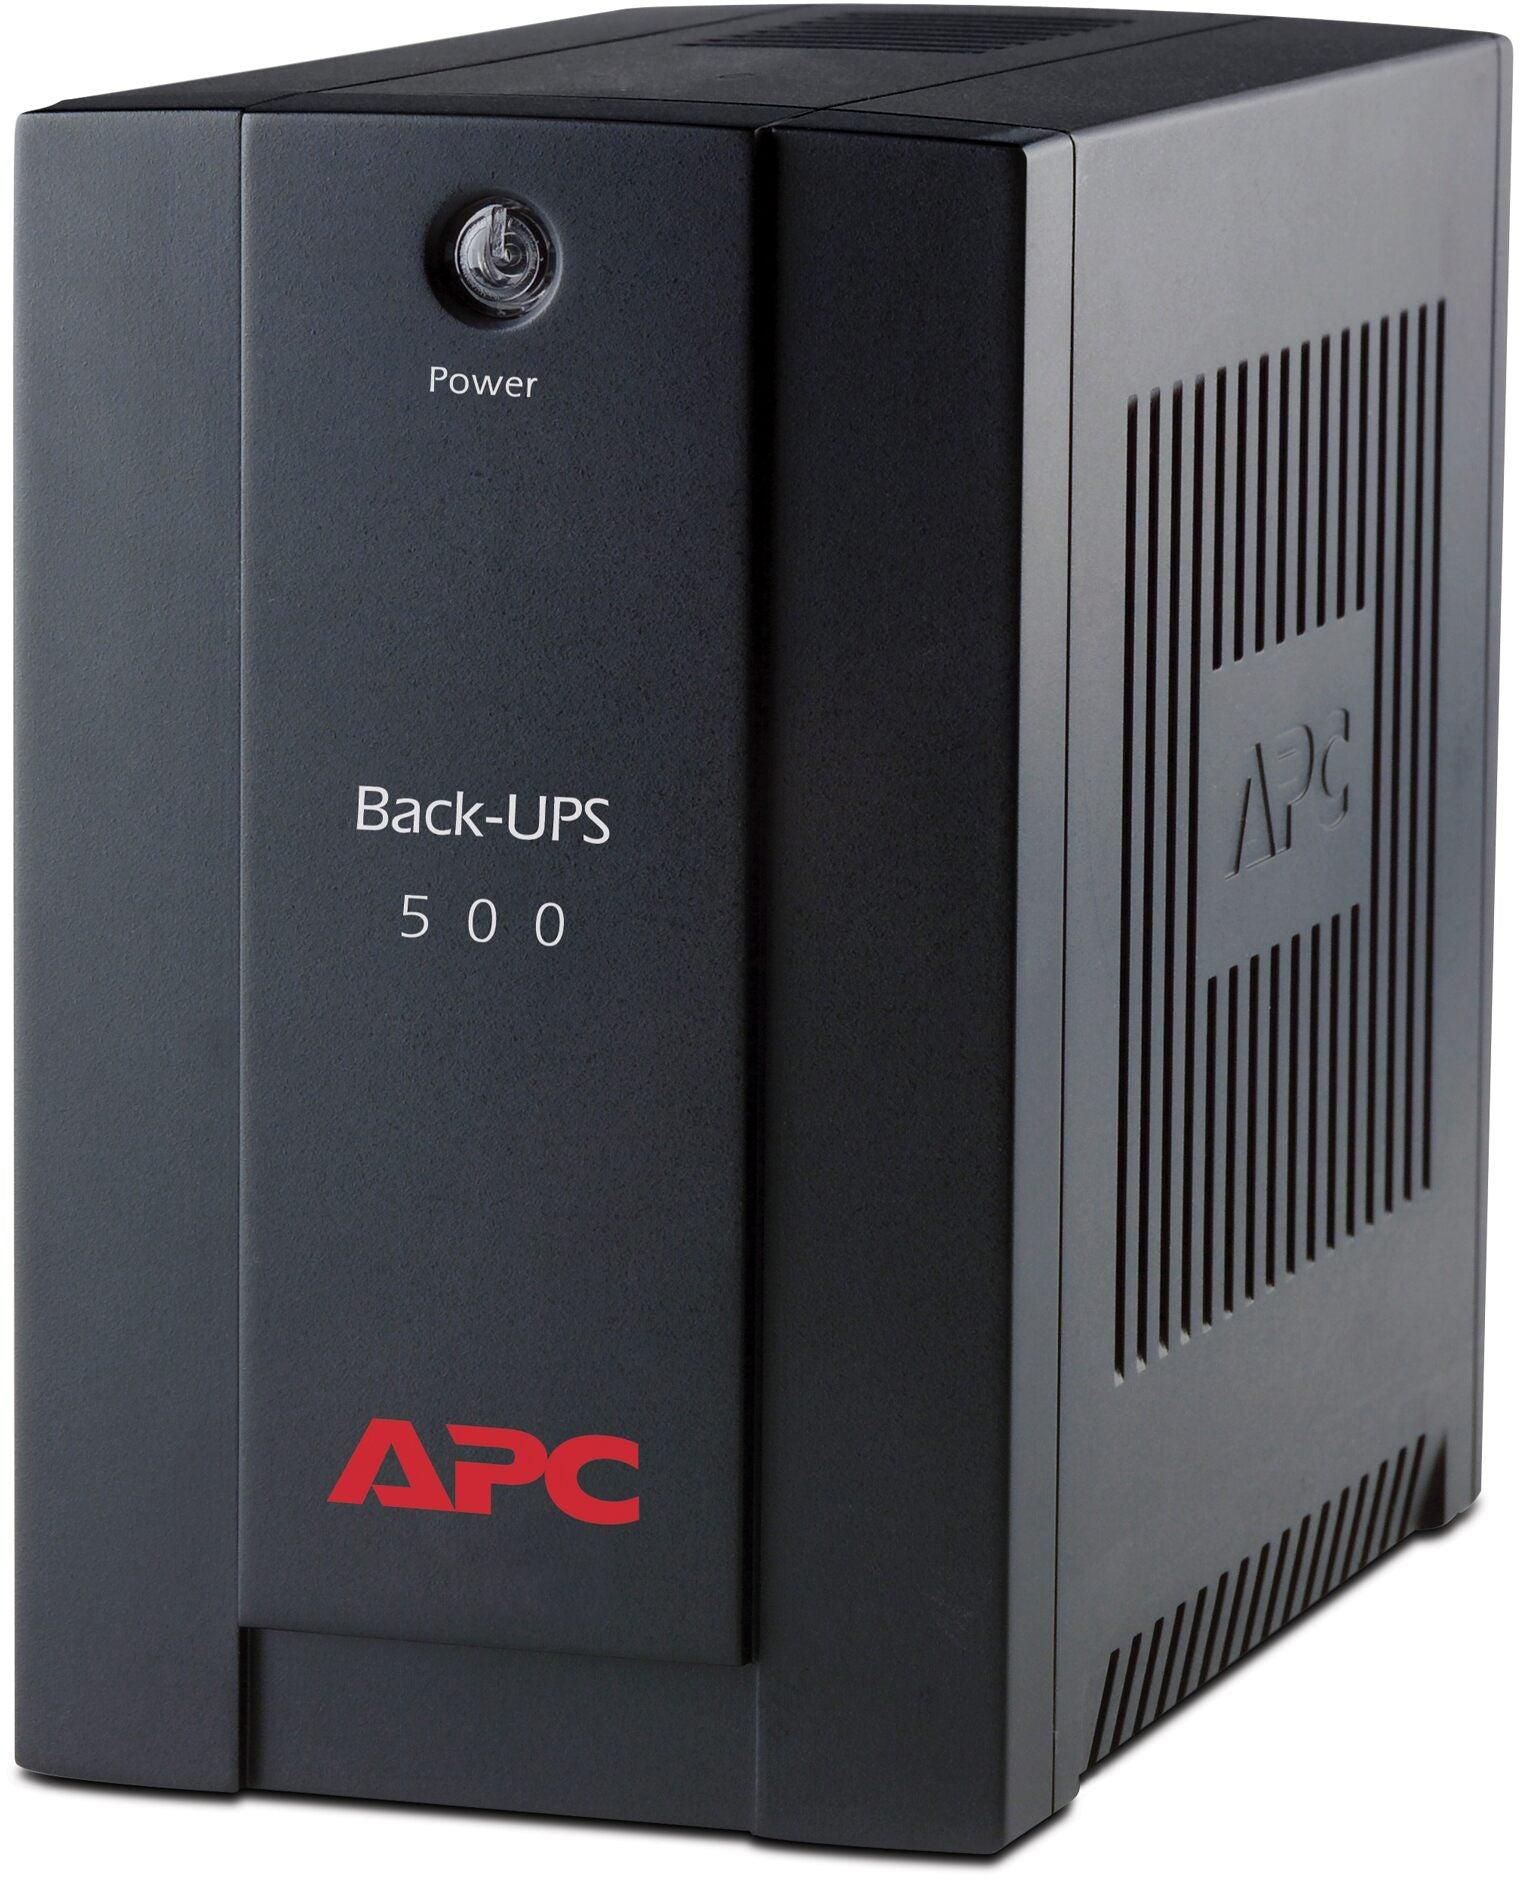 APC BX500CI Back-UPS 500VA AVR IEC outlets UPS